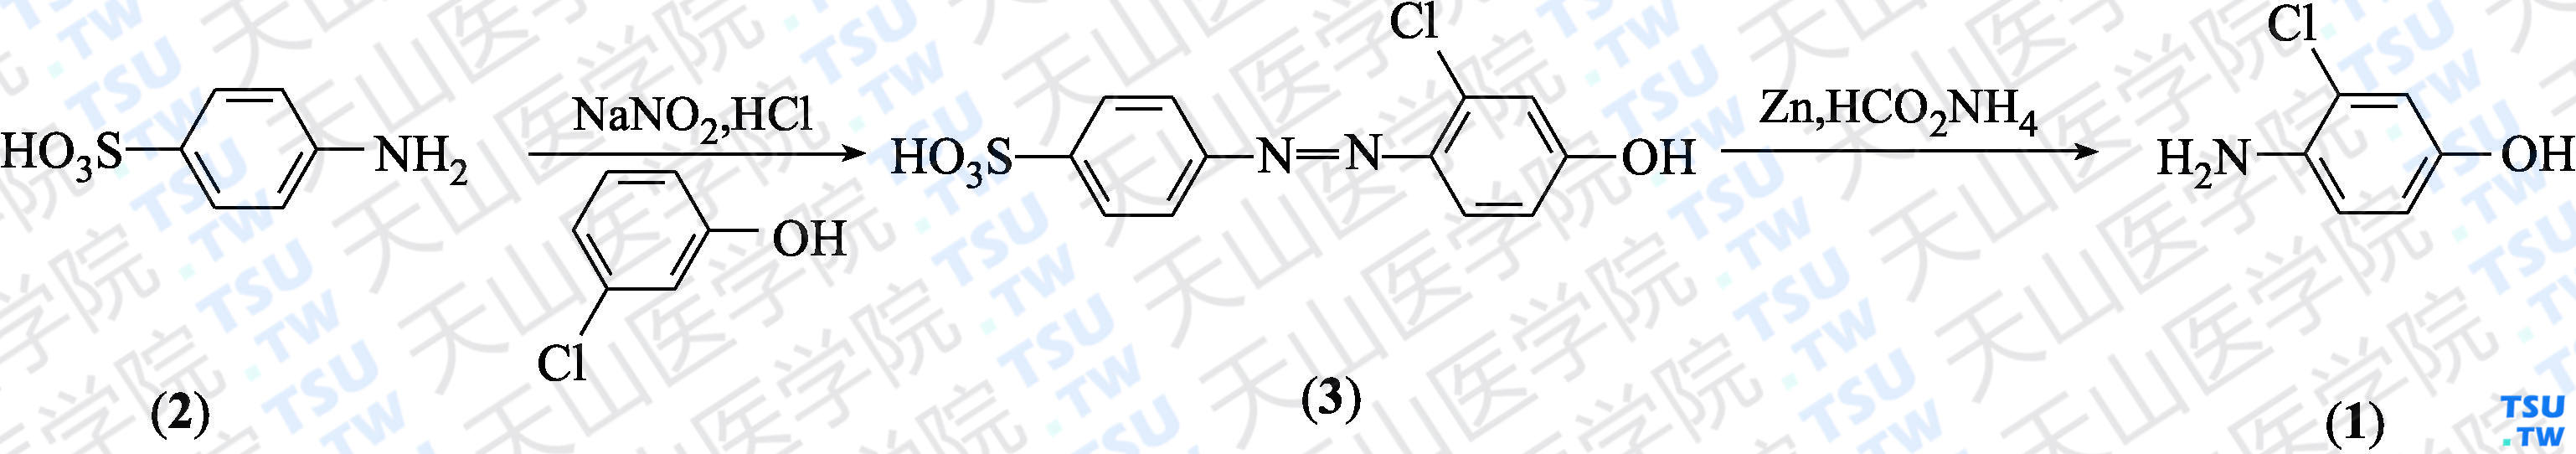 4-氨基-3-氯苯酚（分子式：C<sub>6</sub>H<sub>6</sub>ClNO）的合成方法路线及其结构式